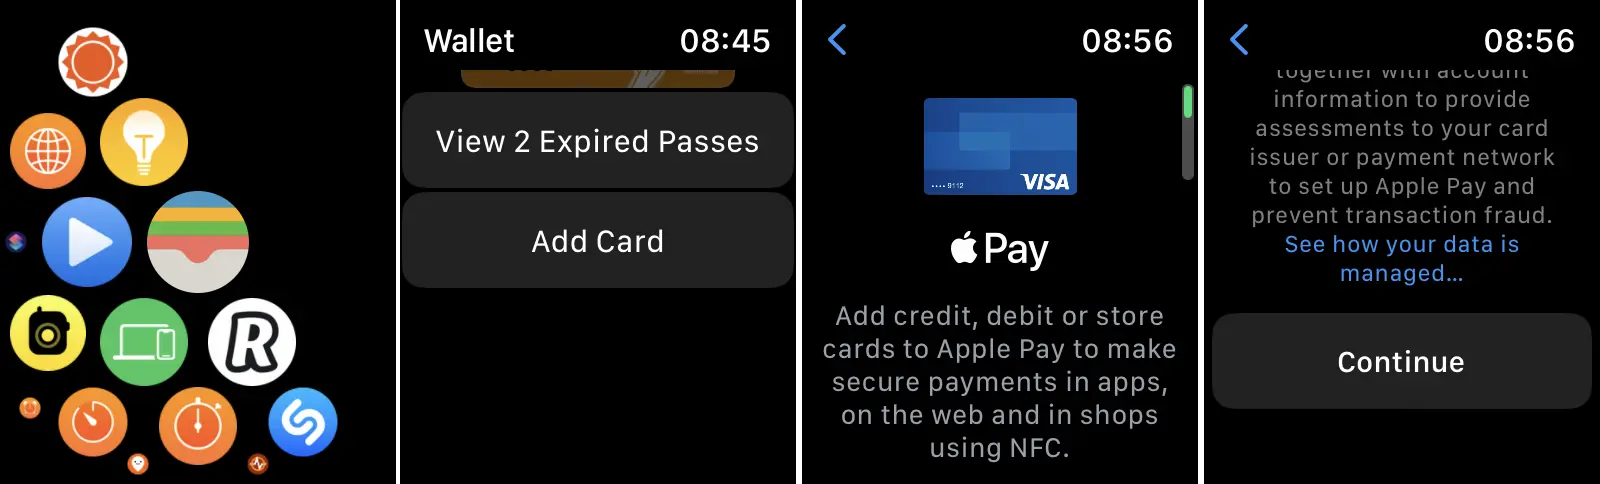 Hvordan tilføjer du bankkort til Apple Pay til Apple Watch?